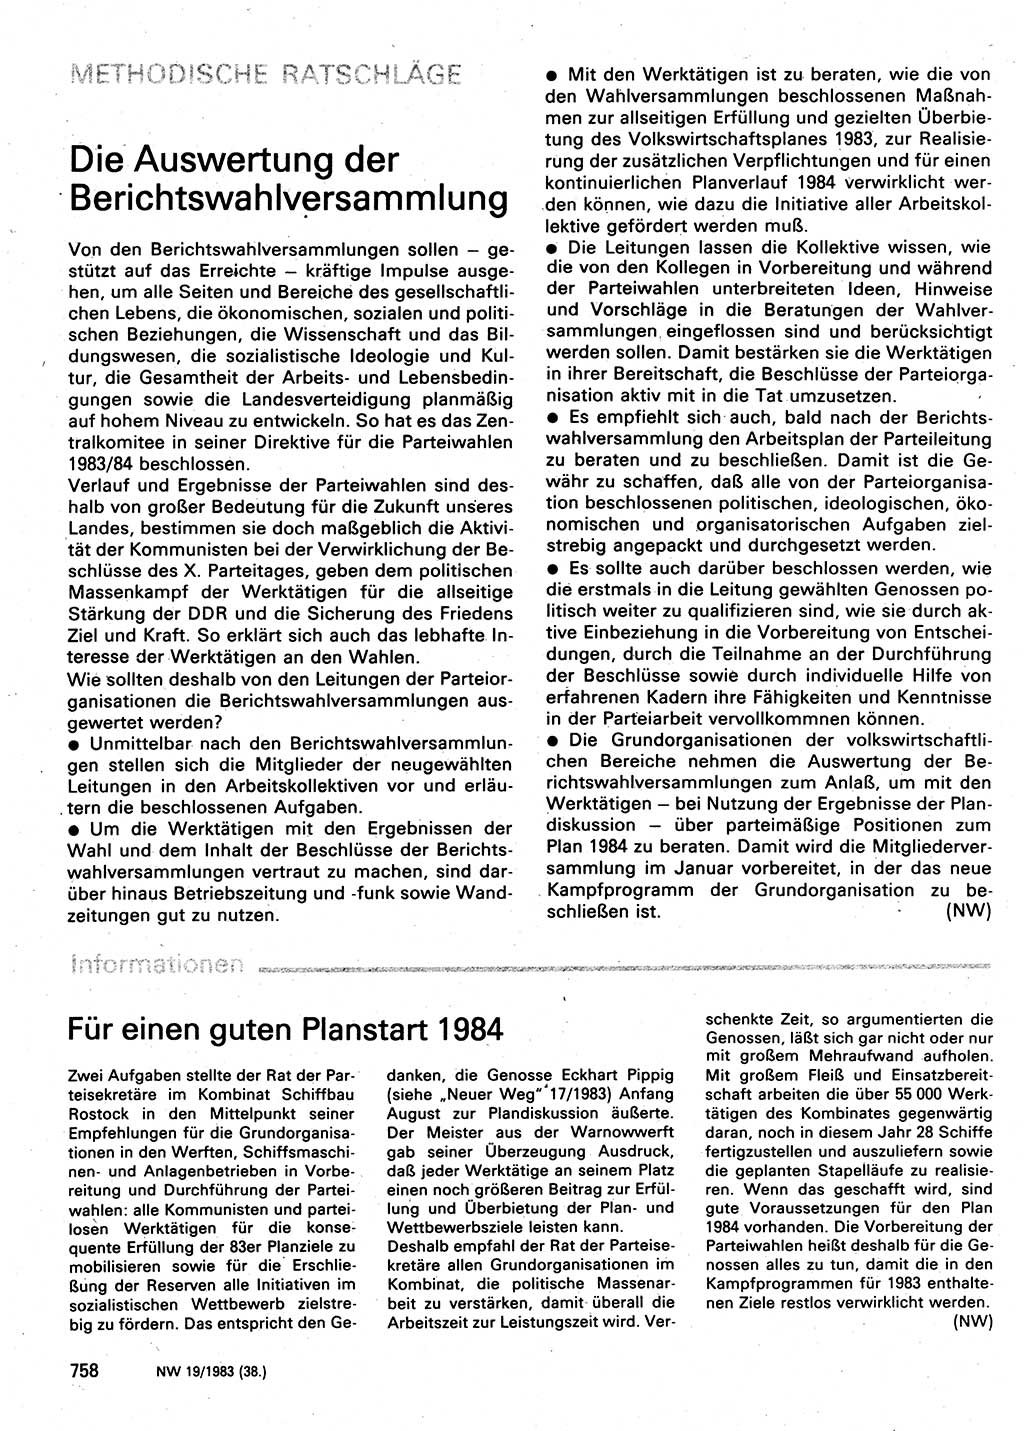 Neuer Weg (NW), Organ des Zentralkomitees (ZK) der SED (Sozialistische Einheitspartei Deutschlands) für Fragen des Parteilebens, 38. Jahrgang [Deutsche Demokratische Republik (DDR)] 1983, Seite 758 (NW ZK SED DDR 1983, S. 758)